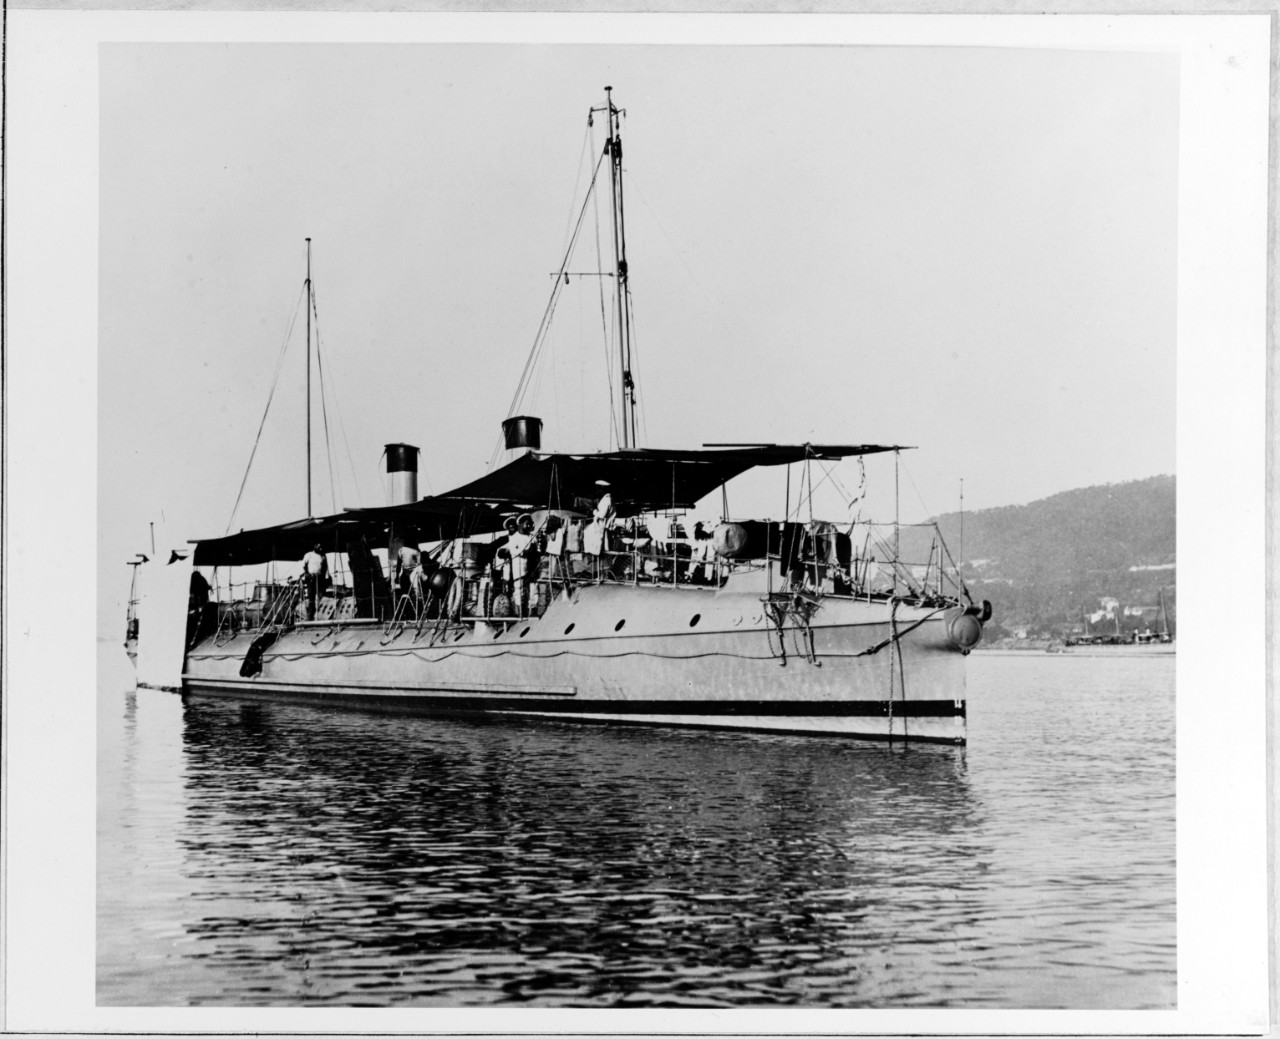 KABYLE (French Torpedo Boat, 1891)